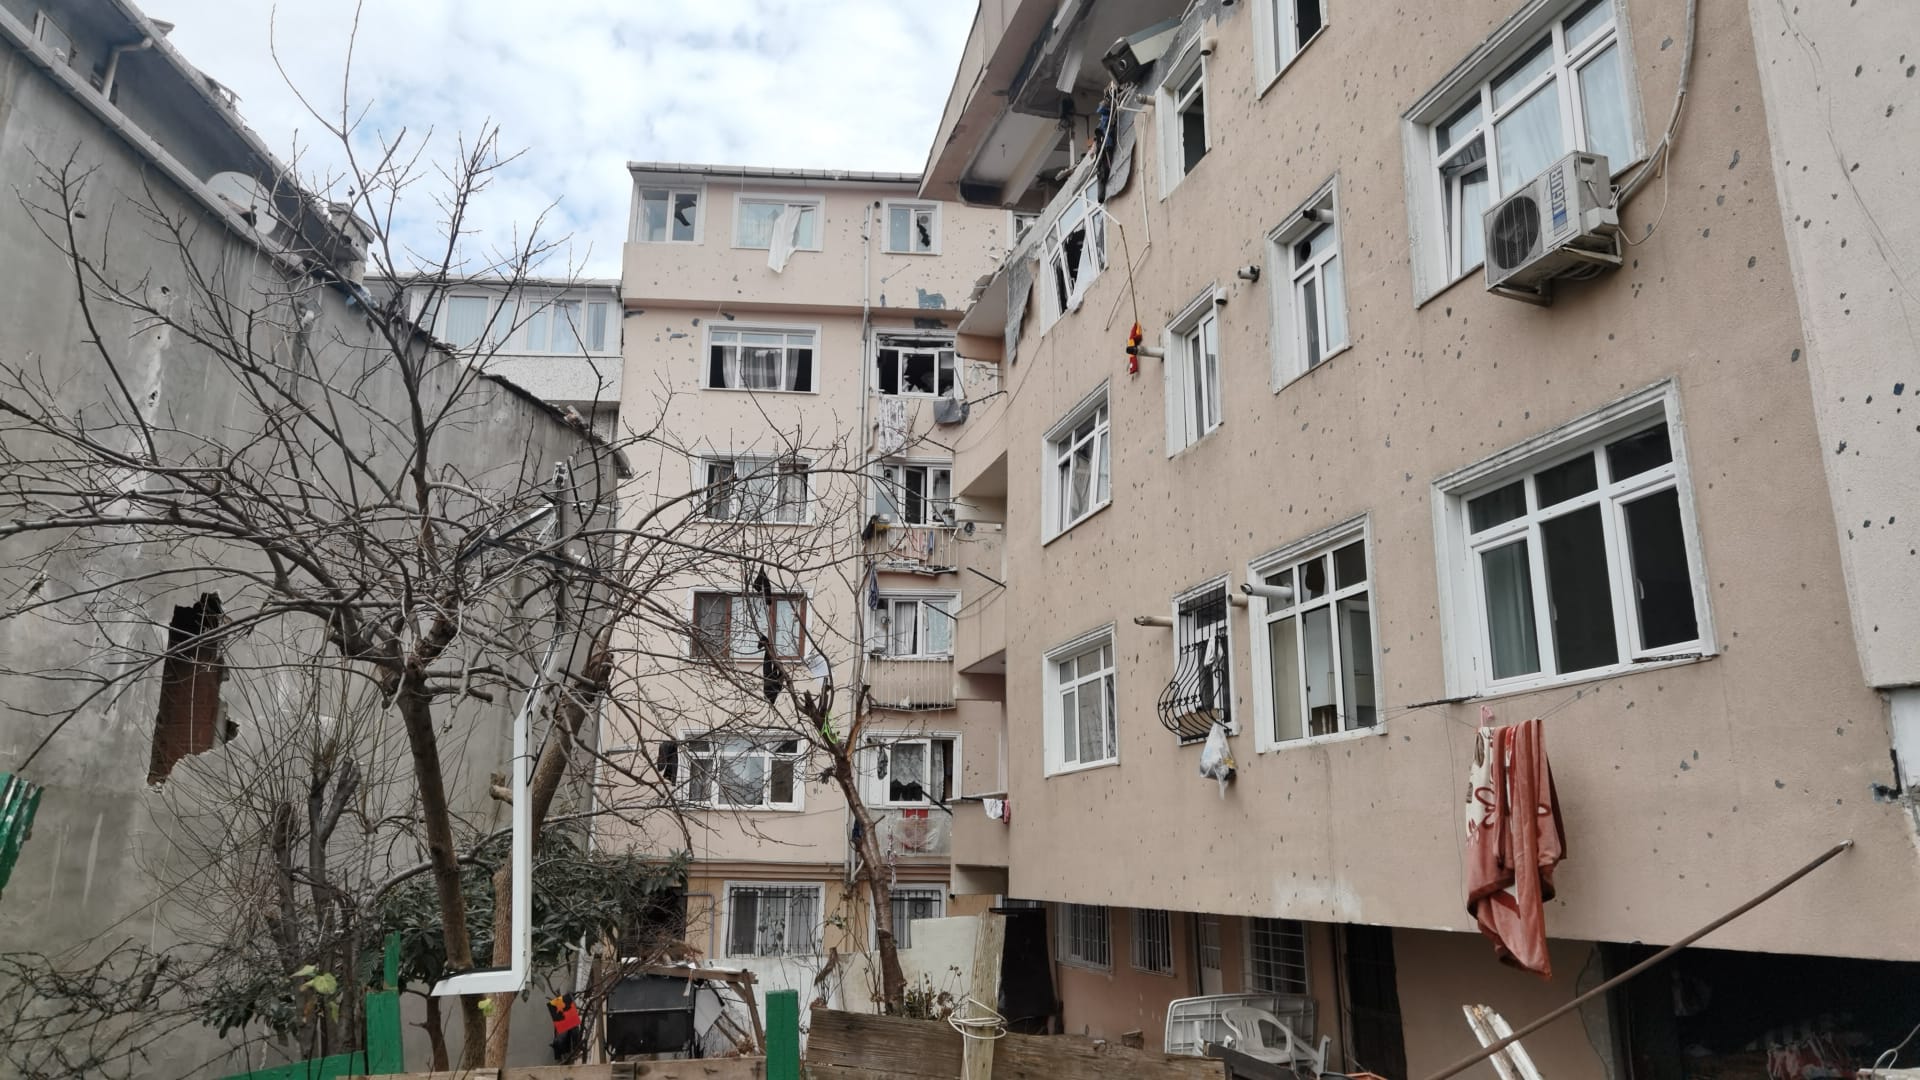 Son dakika | İstanbul Üsküdar'da 5 katlı binada patlama: Yaralılar var! Bir vatandaş dördüncü kattan düştü 